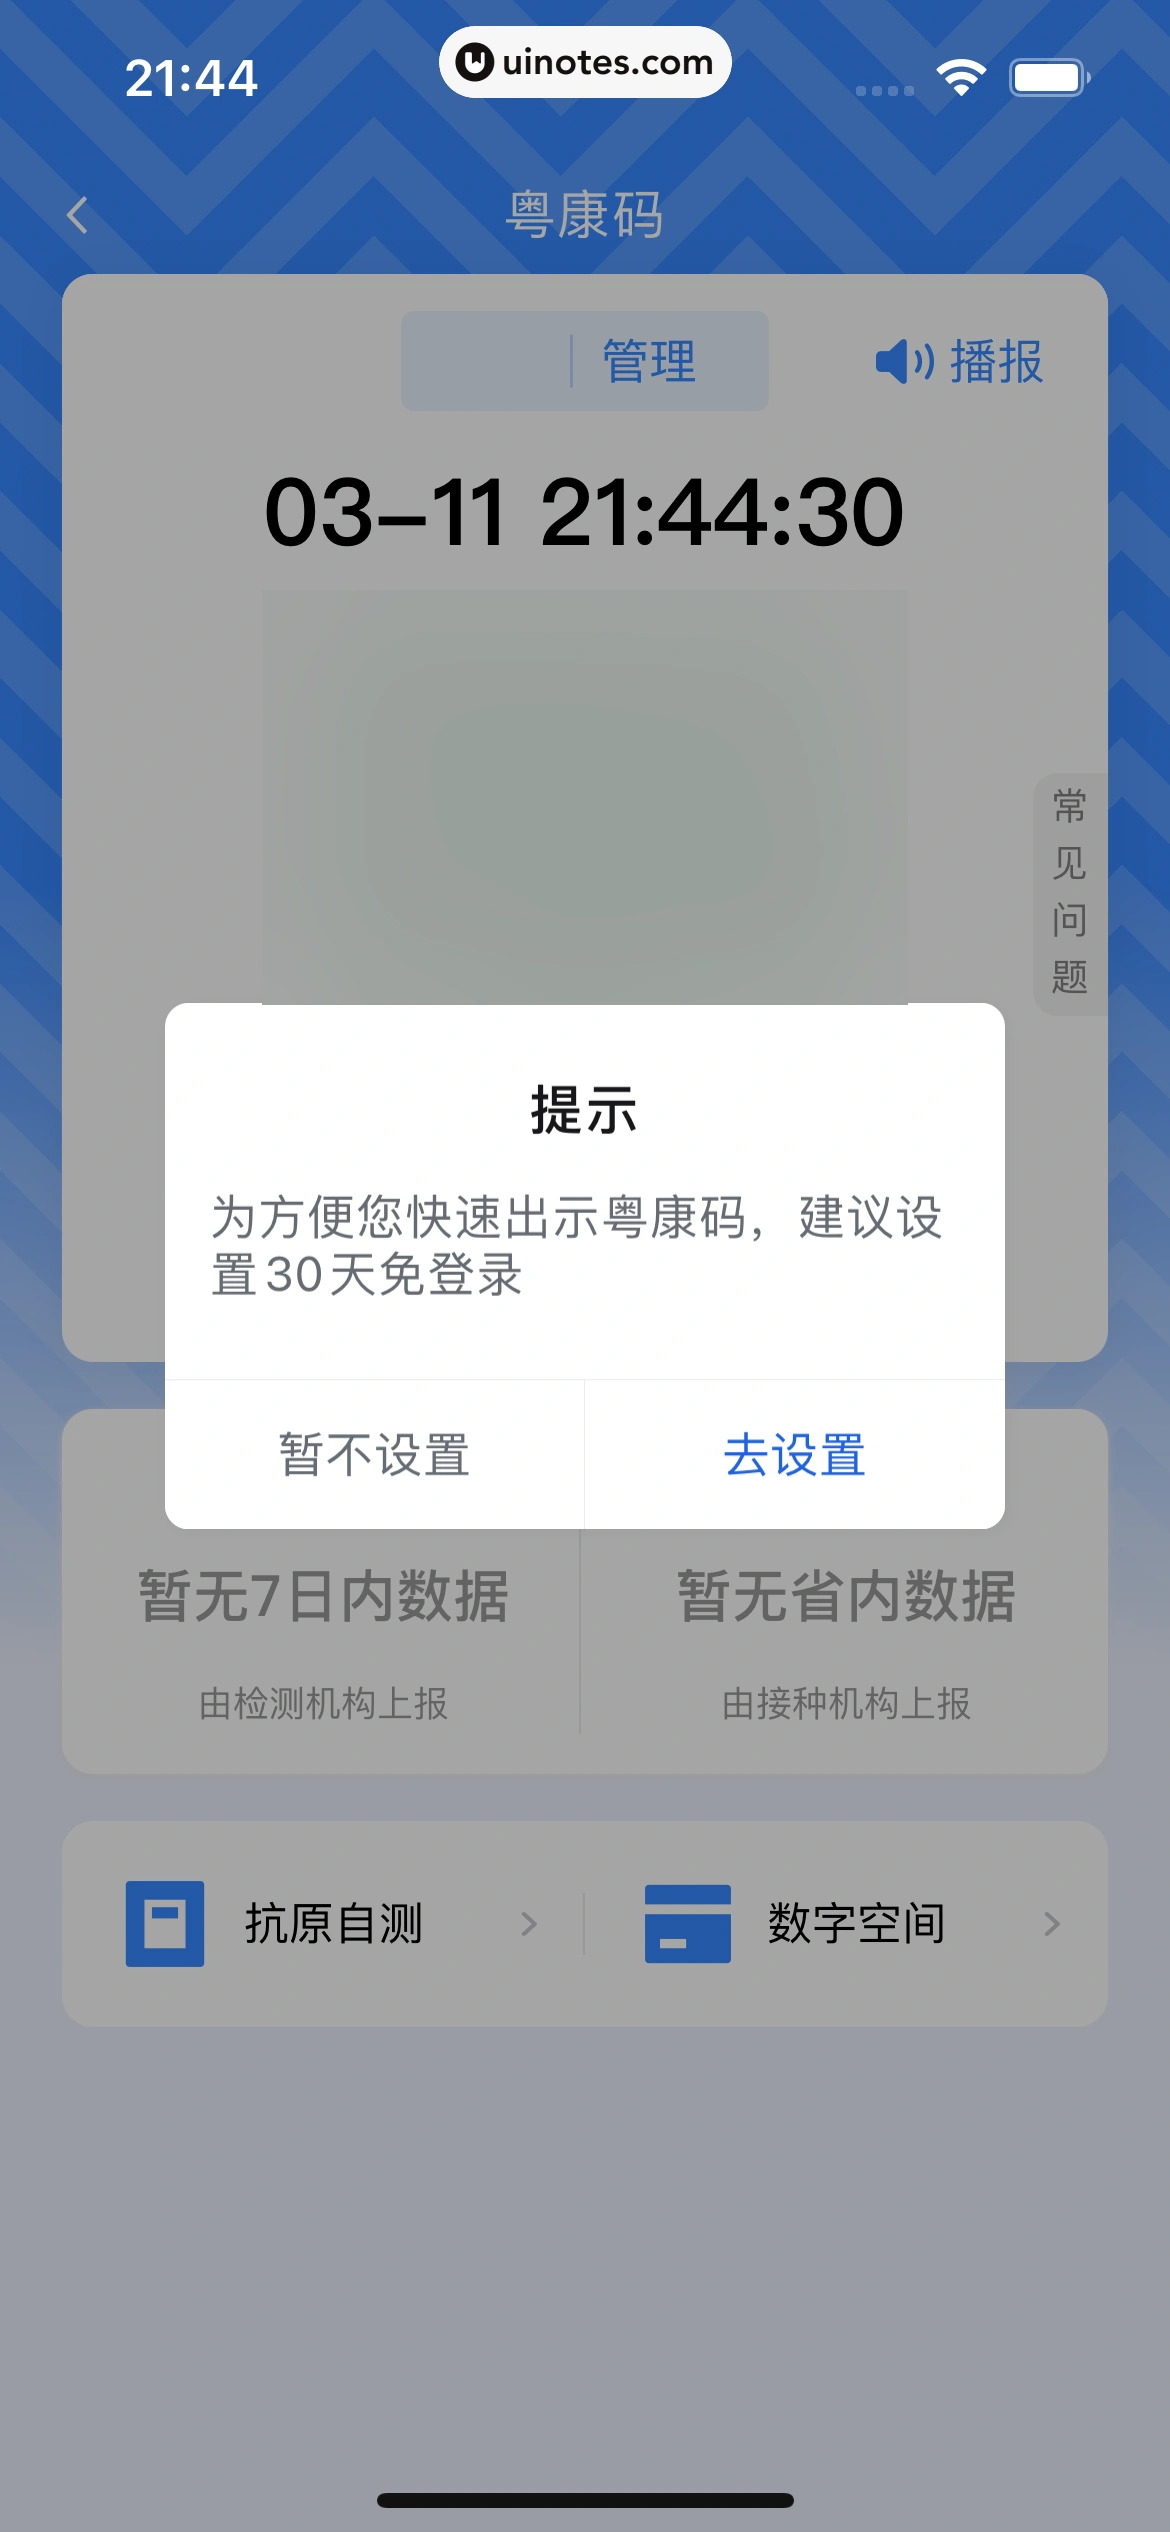 粤省事 App 截图 031 - UI Notes